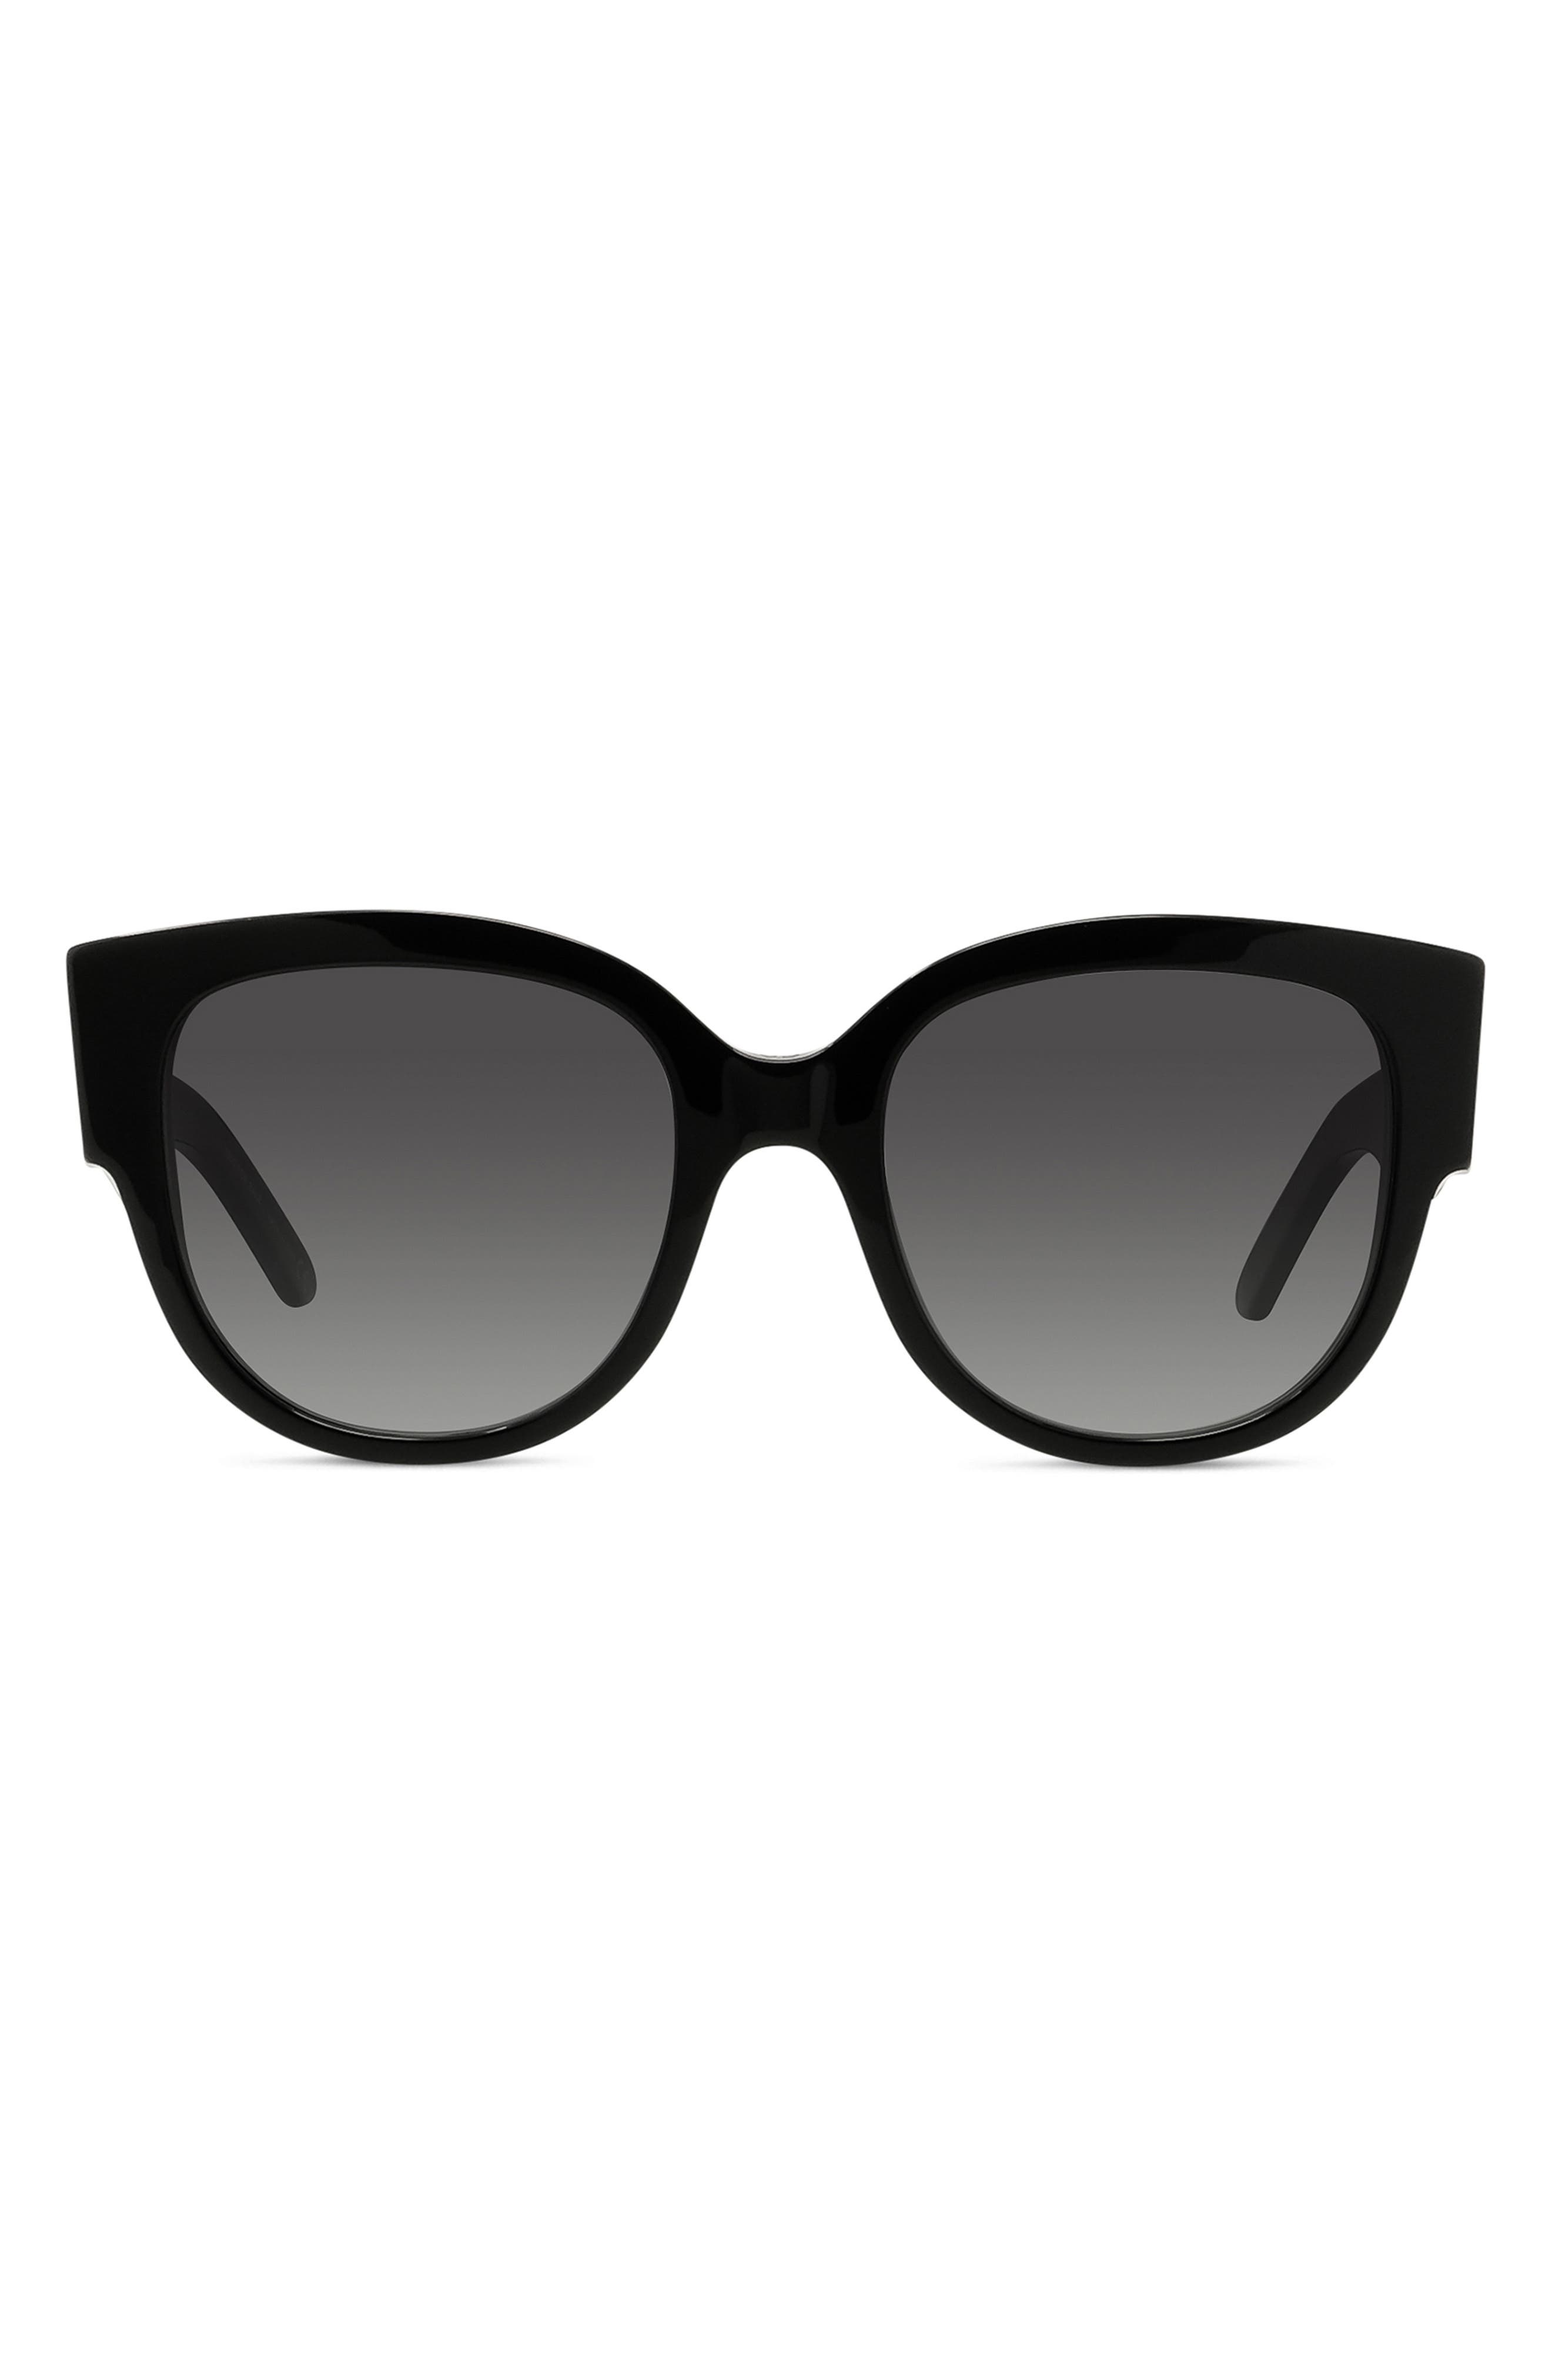 round dior sunglasses